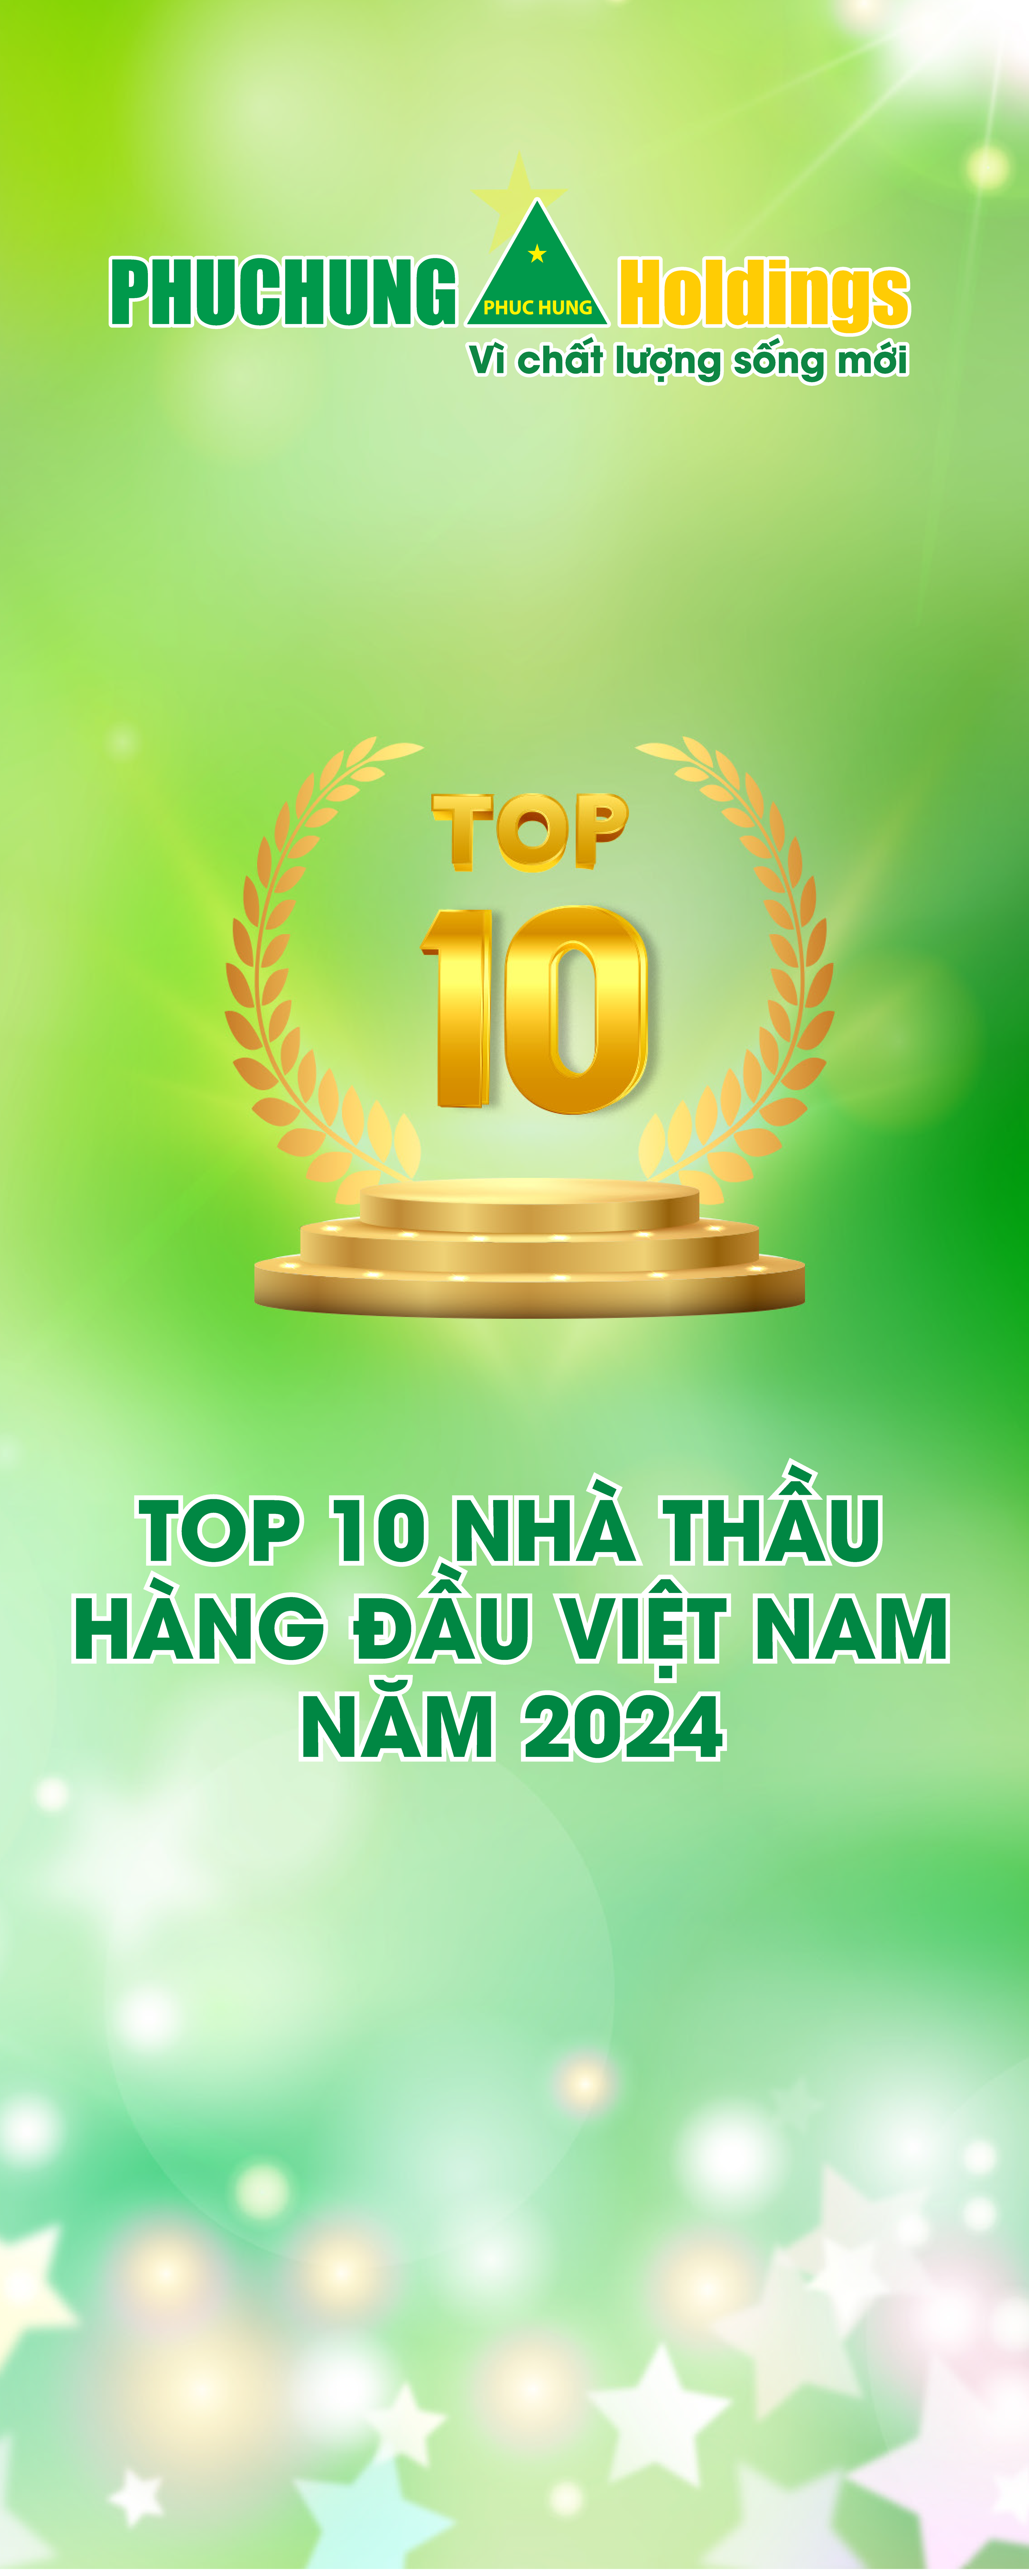 Top 10 Nhà Thầu Xây Dựng Hàng Đầu Việt Nam Năm 2024 baner right